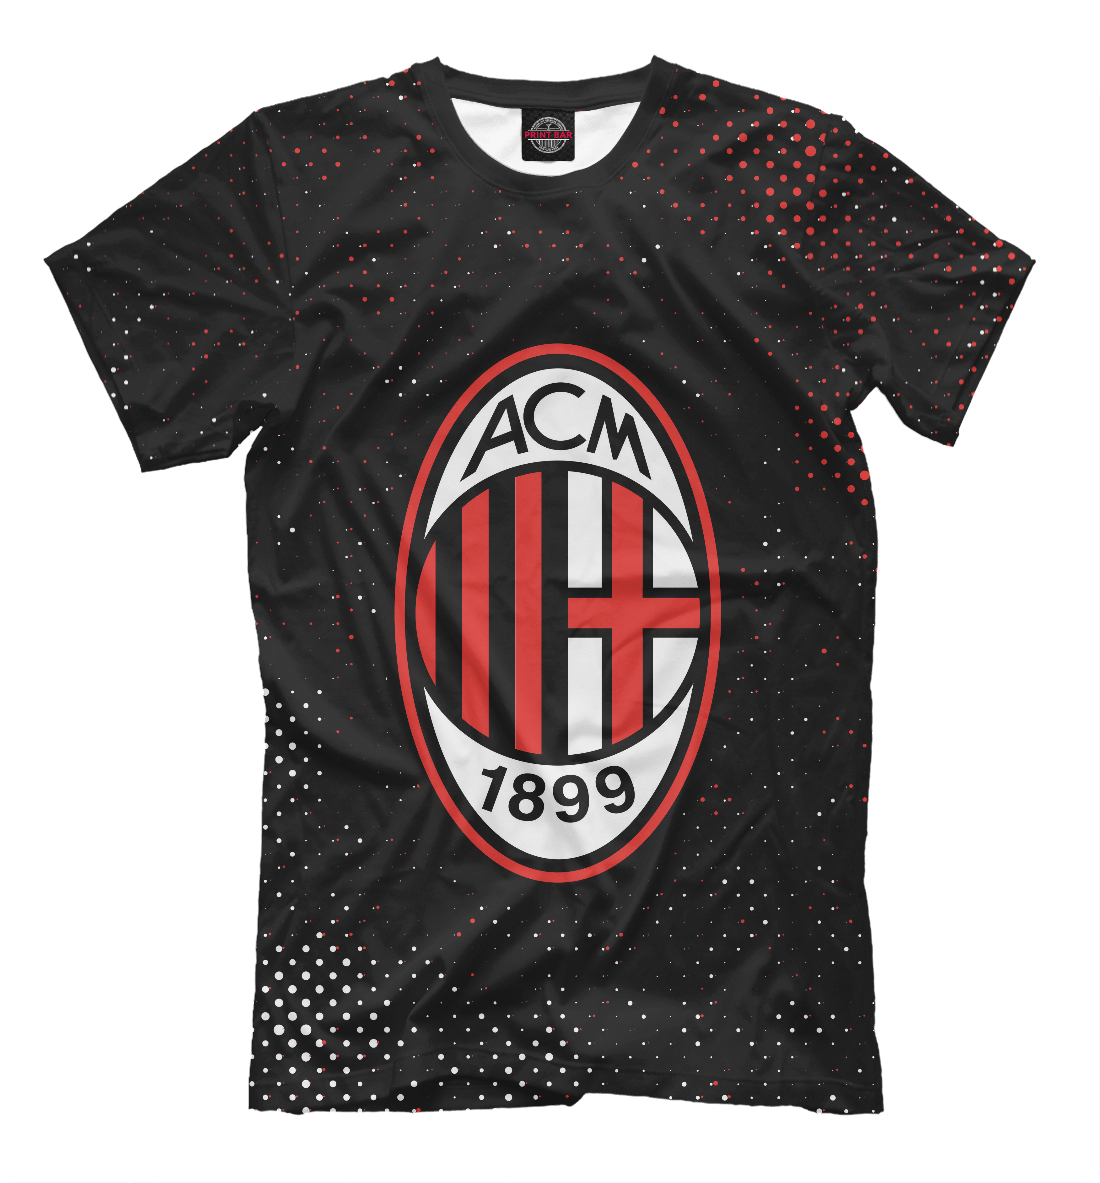 Футболка AC Milan / Милан для мужчин, артикул: ACM-978207-fut-2mp